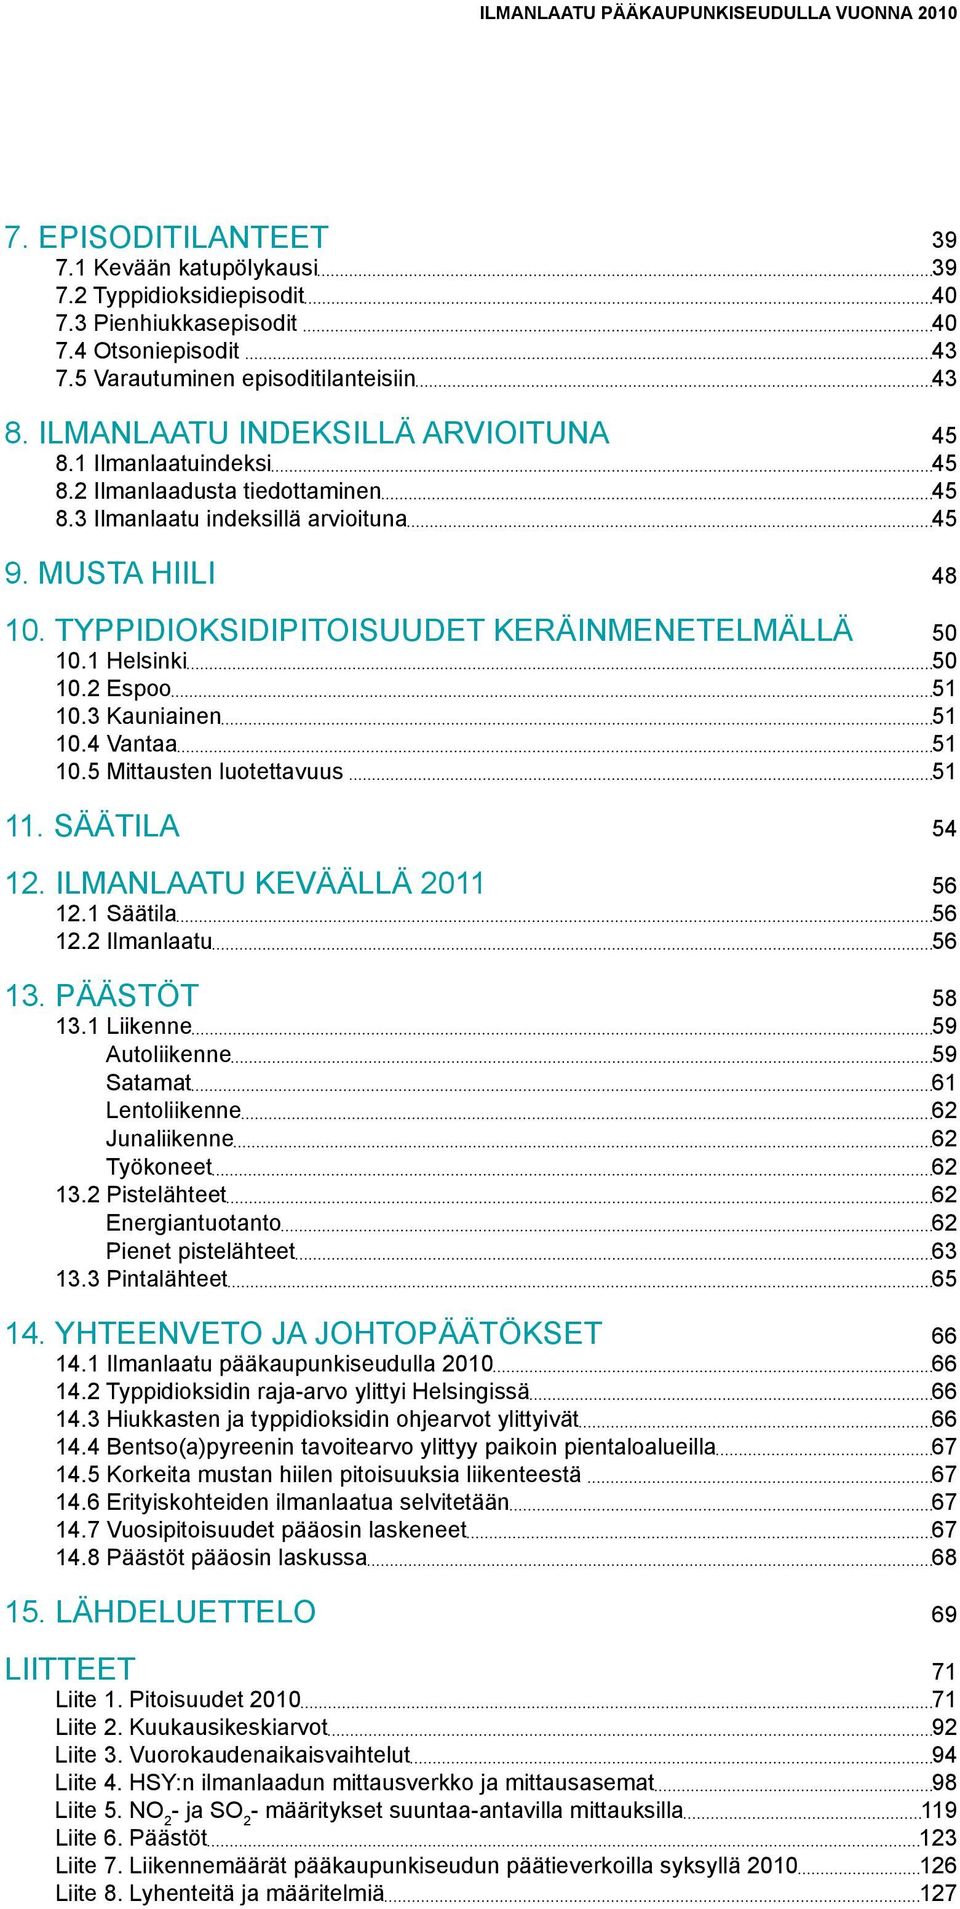 Typpidioksidipitoisuudet keräinmenetelmällä 5 1.1 Helsinki 5 1.2 Espoo 51 1.3 Kauniainen 51 1.4 Vantaa 51 1.5 Mittausten luotettavuus 51 11. Säätila 54 12. Ilmanlaatu keväällä 211 56 12.